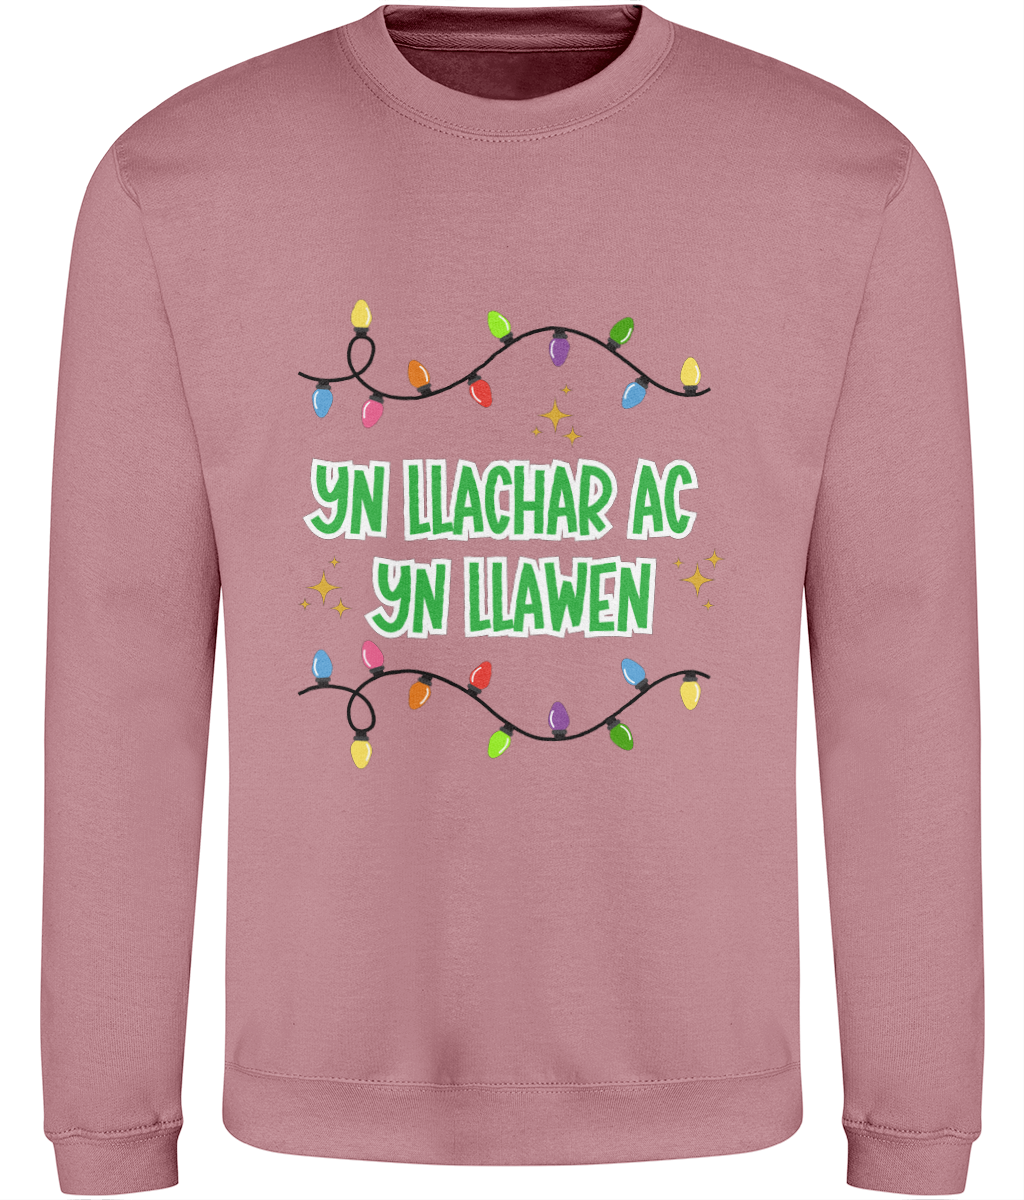 Yn llachar ac yn llawen - Welsh Christmas Sweatshirt